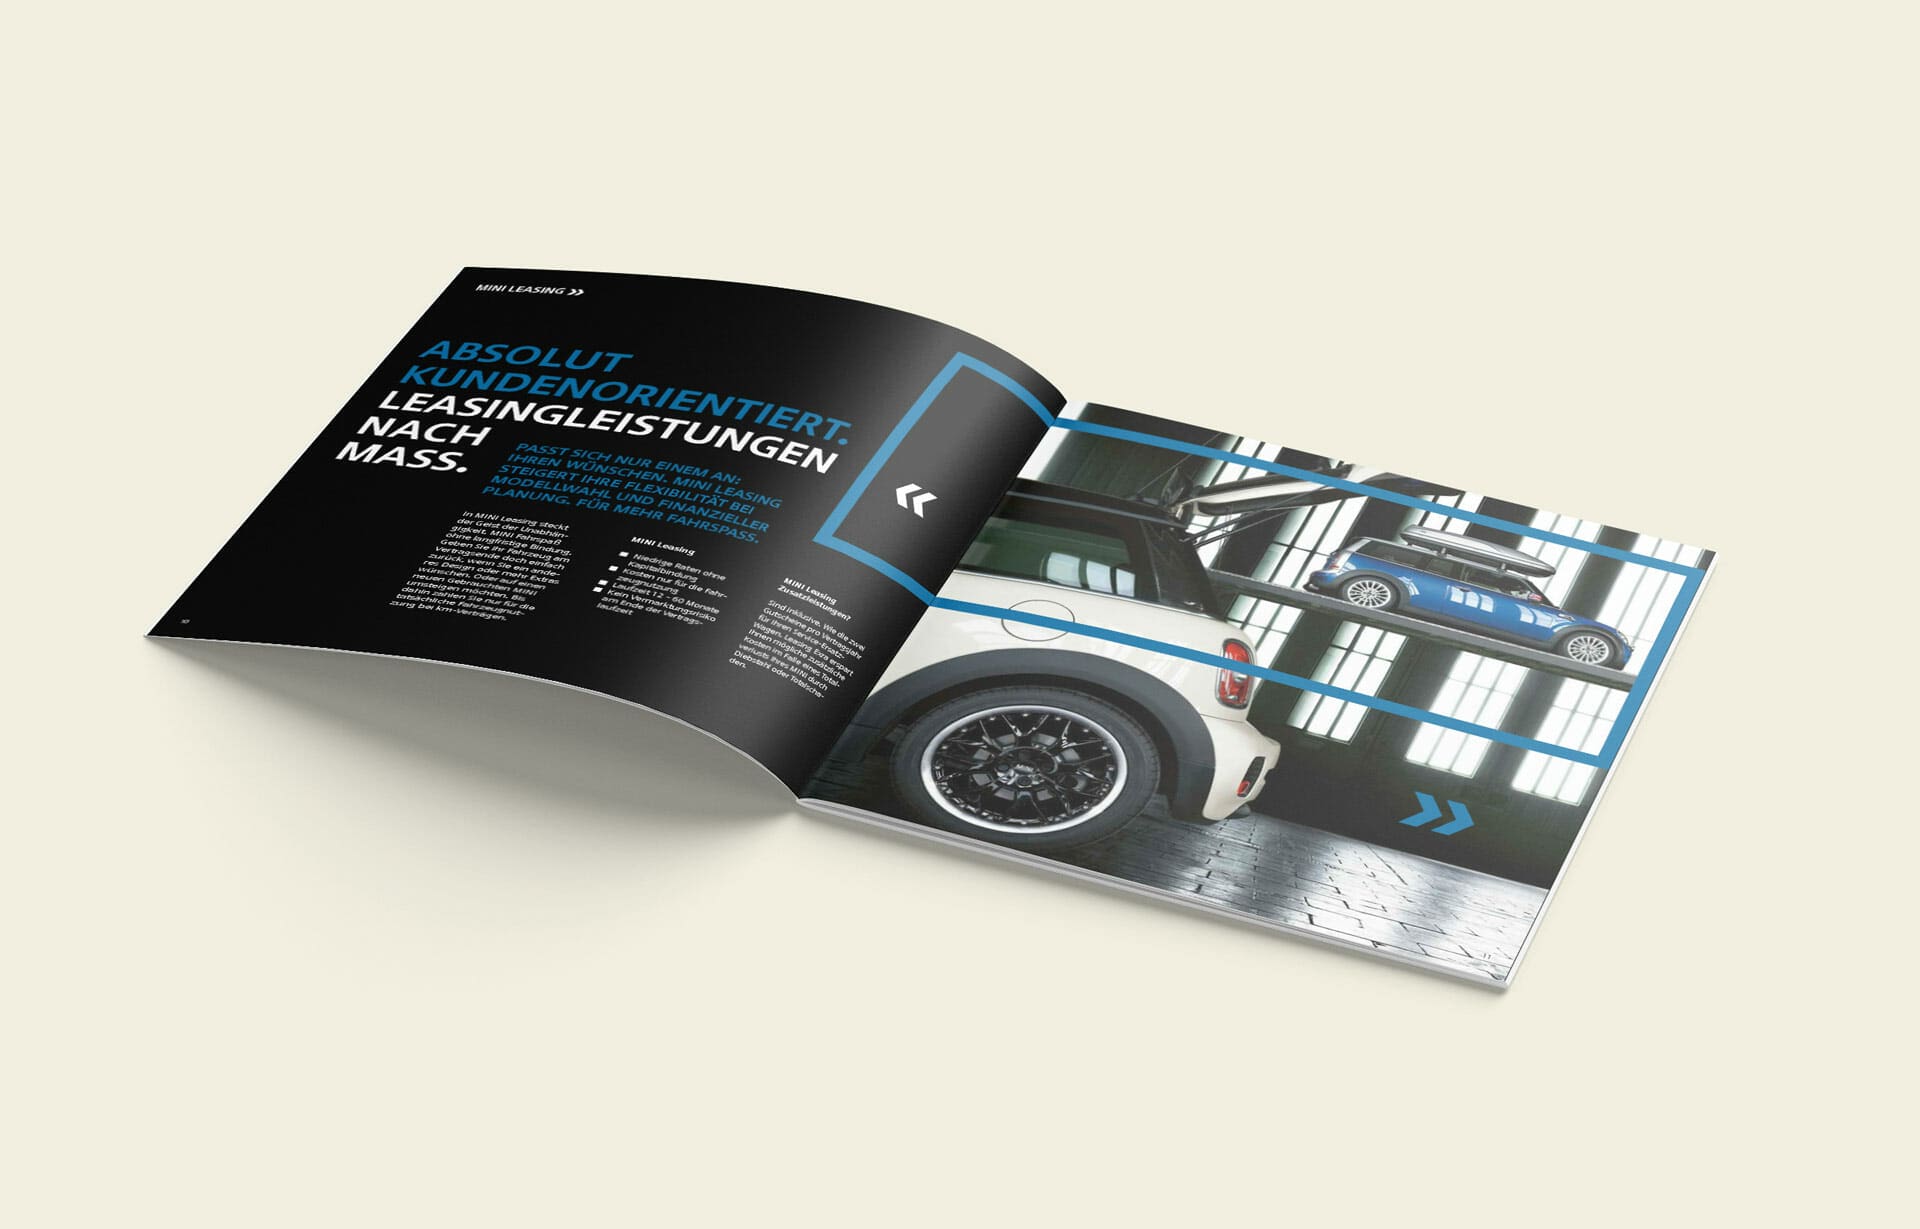 MINI Financial Services Broschüre (Gebrauchte Automobile) innen